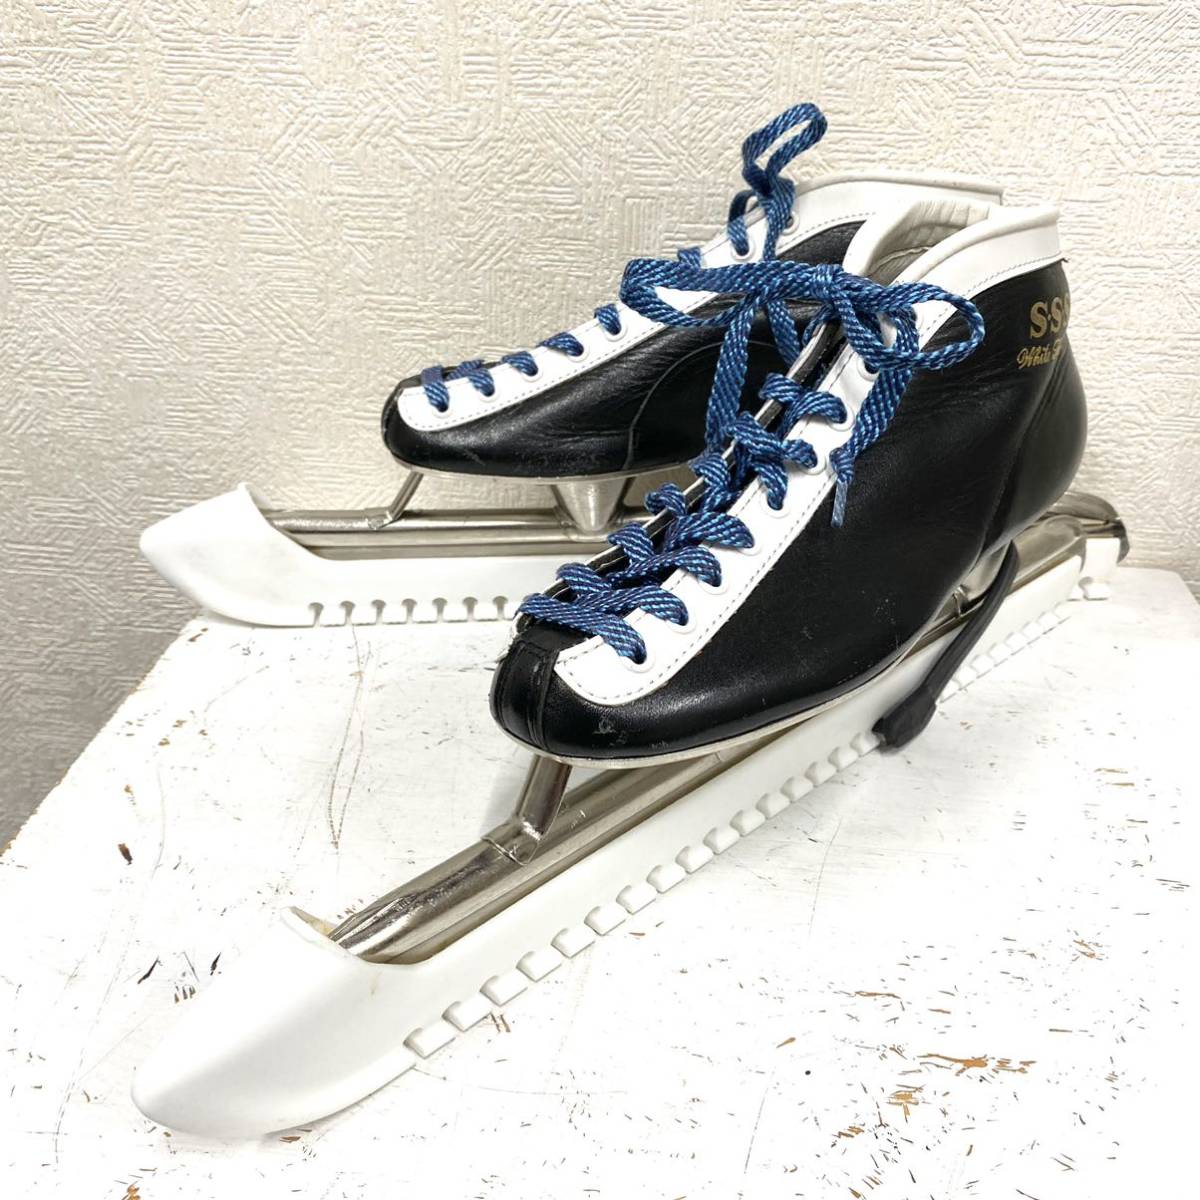 ヤフオク! -「スケート靴 24」(スポーツ別) の落札相場・落札価格